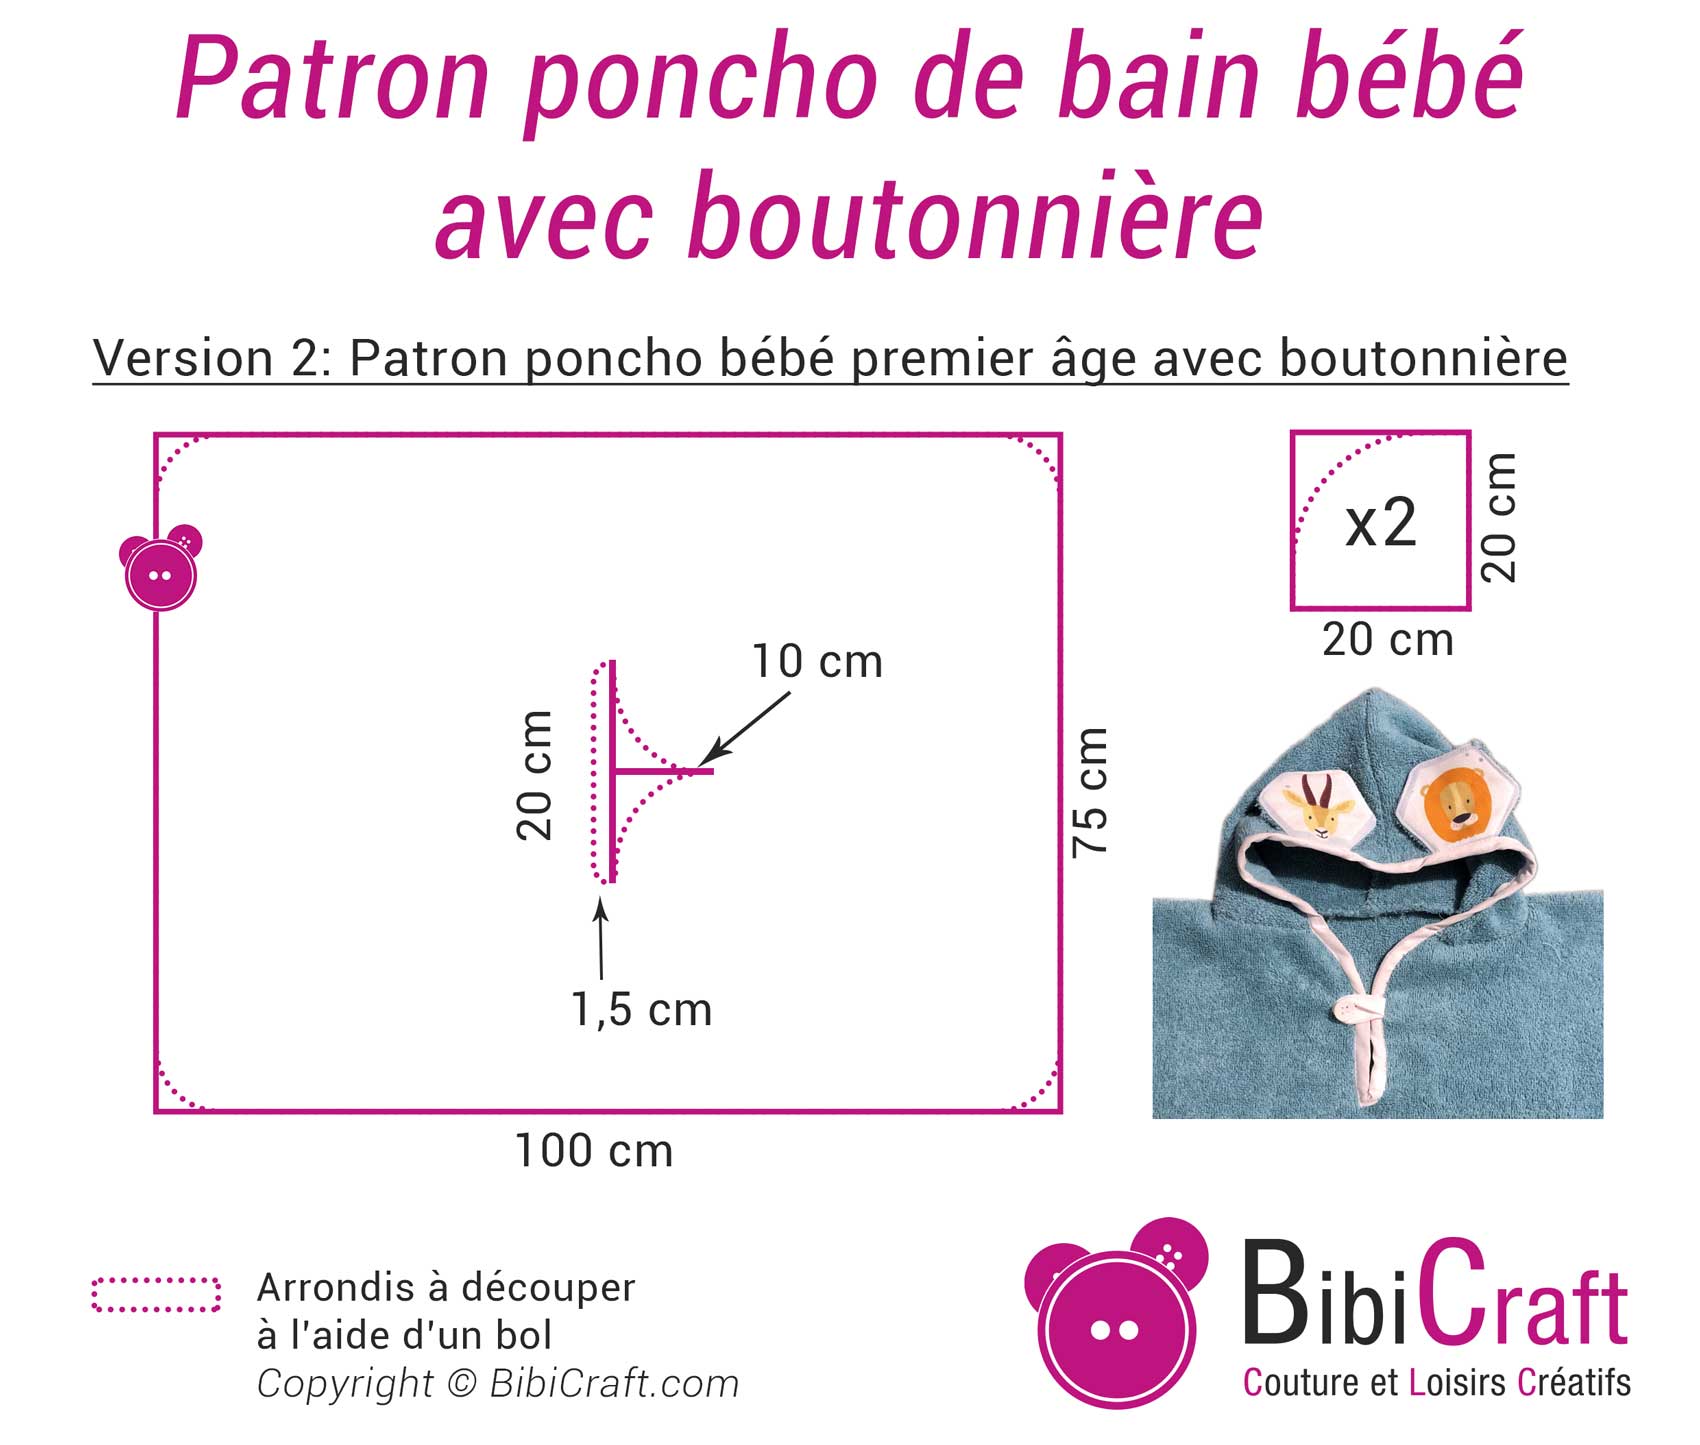 Poncho De Bain Pour Bebe Bibicraft